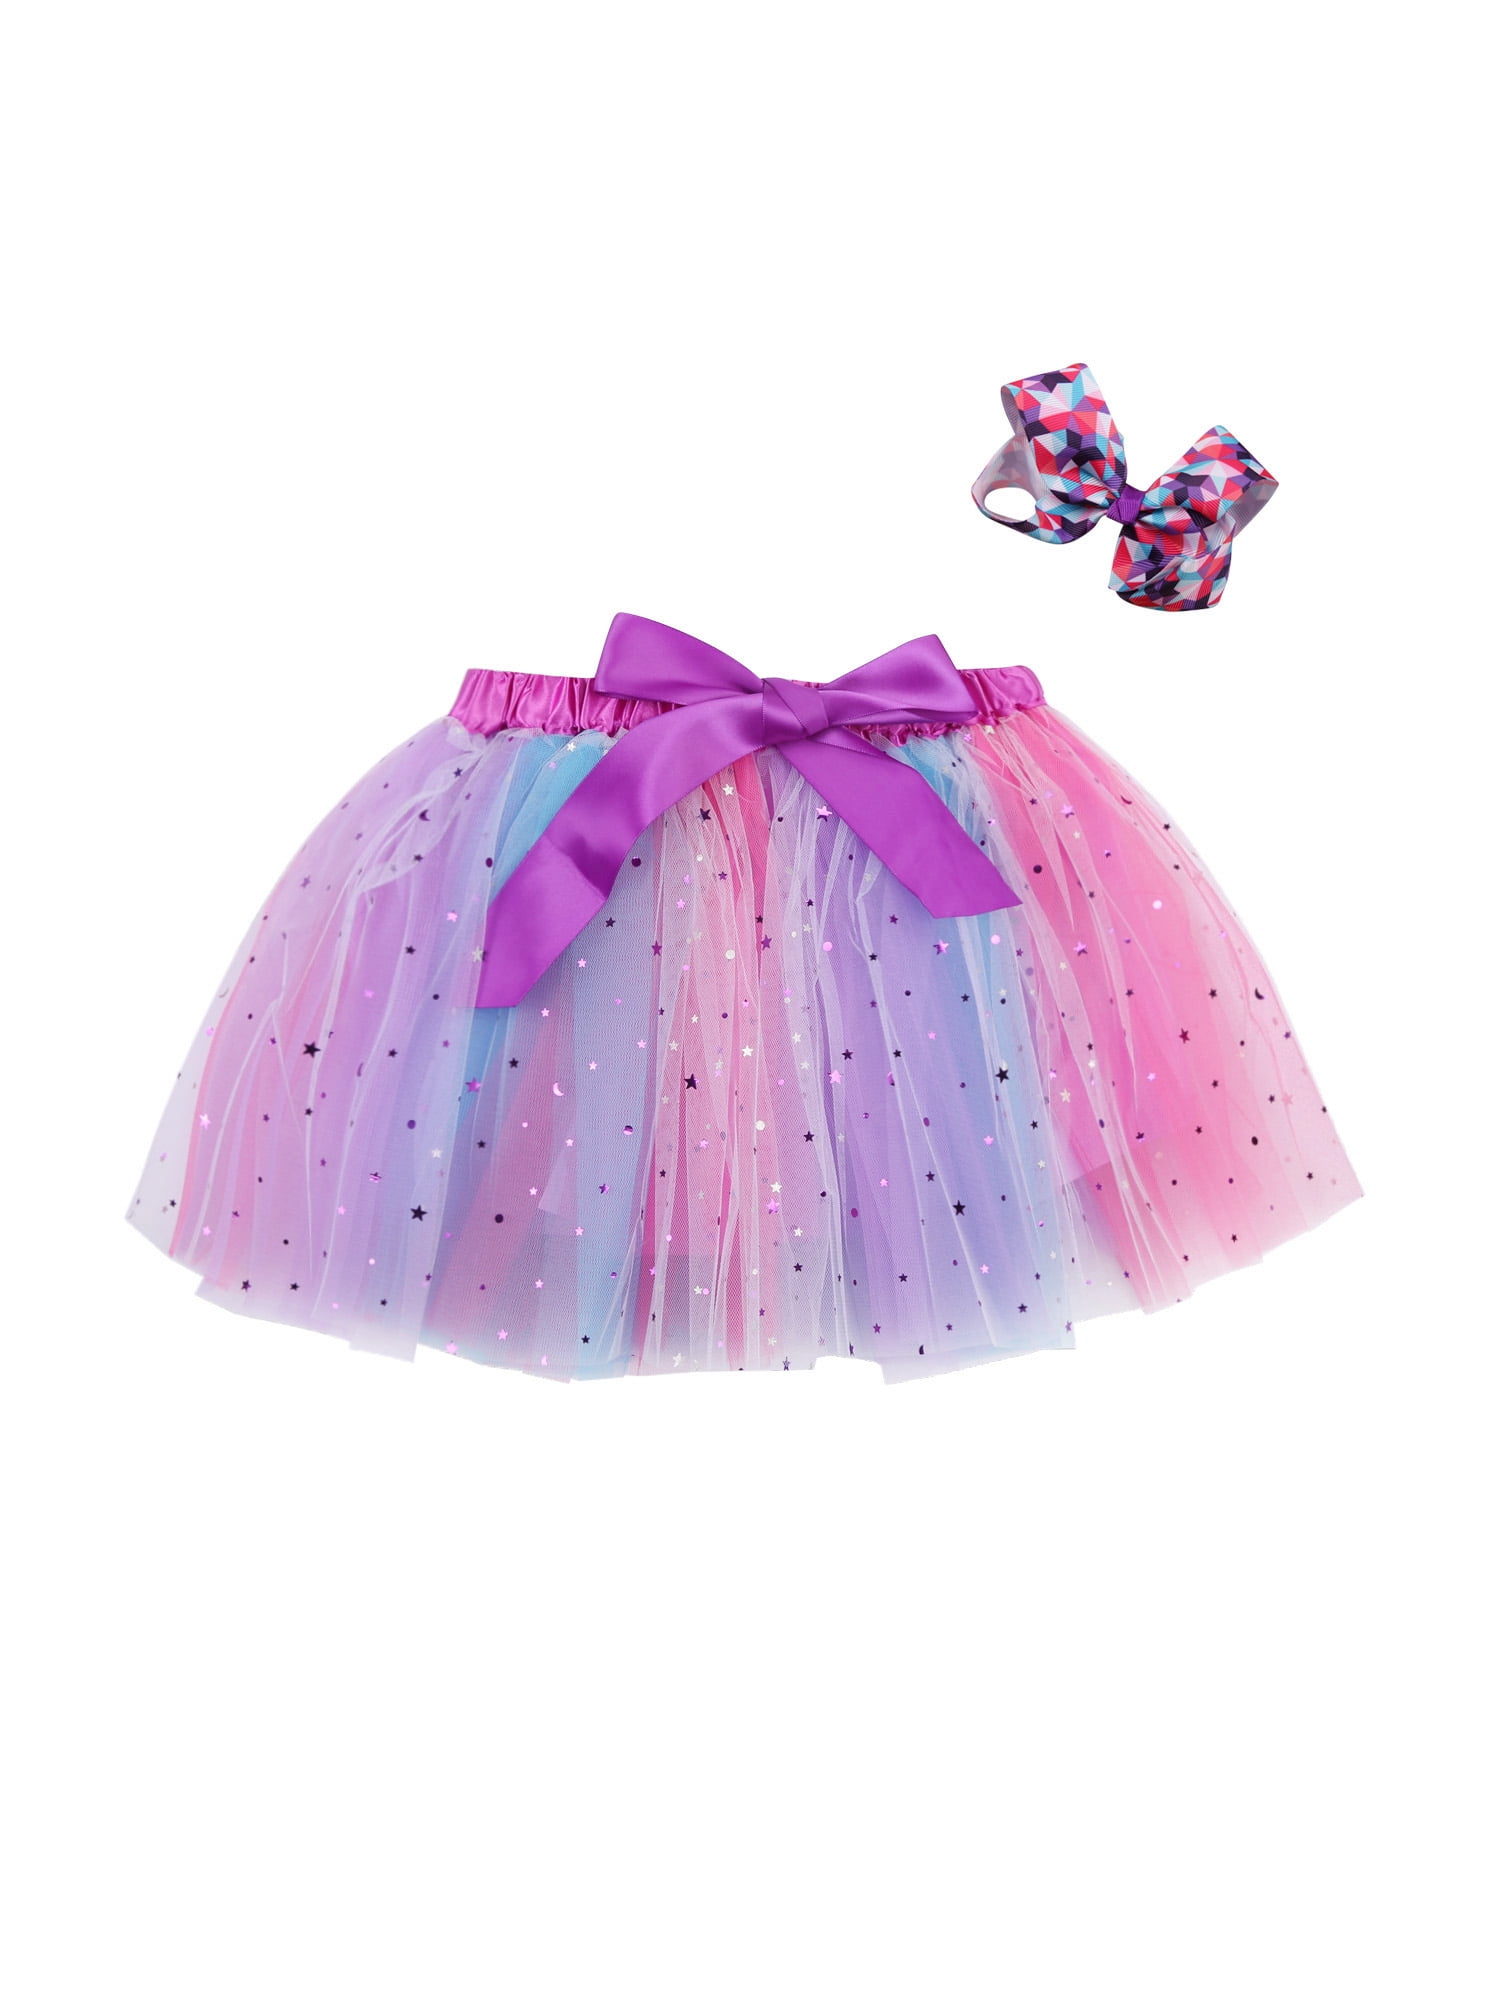 BABY Girl Kids Lavender Pettiskirt Tutu Fluffy Skirt Dance Party 2-9 Years TUTU 